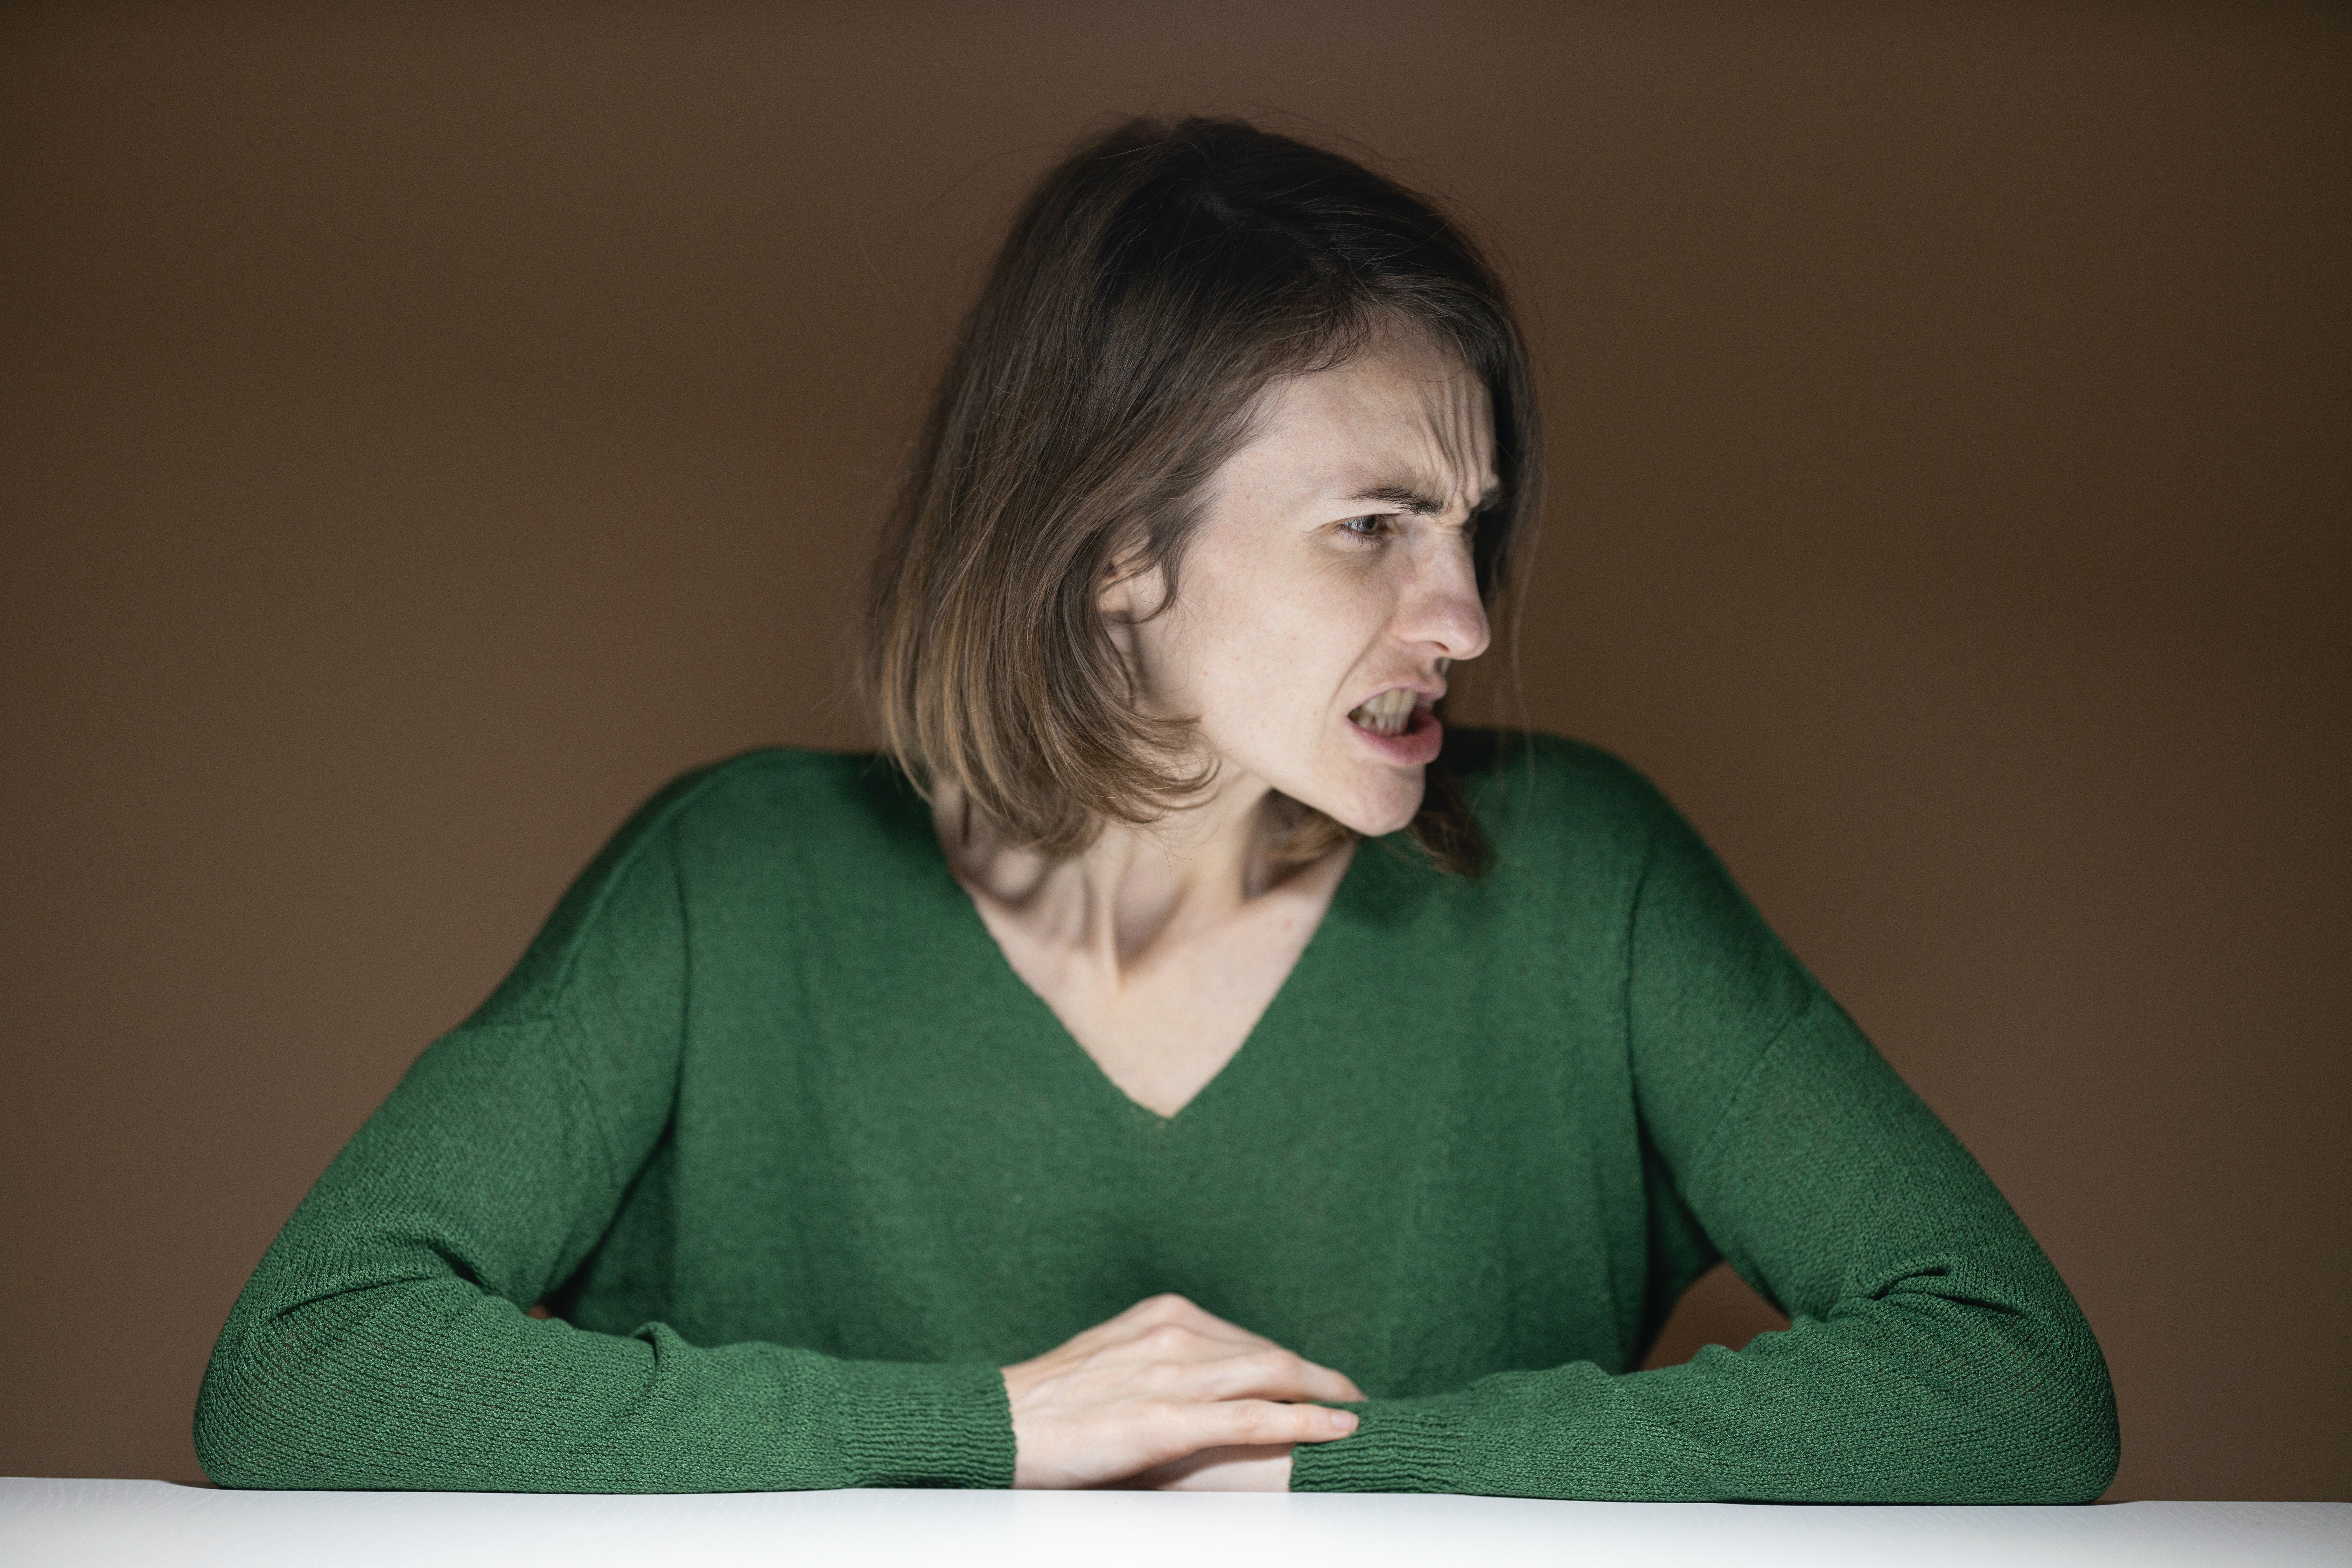 Mujer con rostro enojado vistiendo un suéter verde. | Foto: Pexels